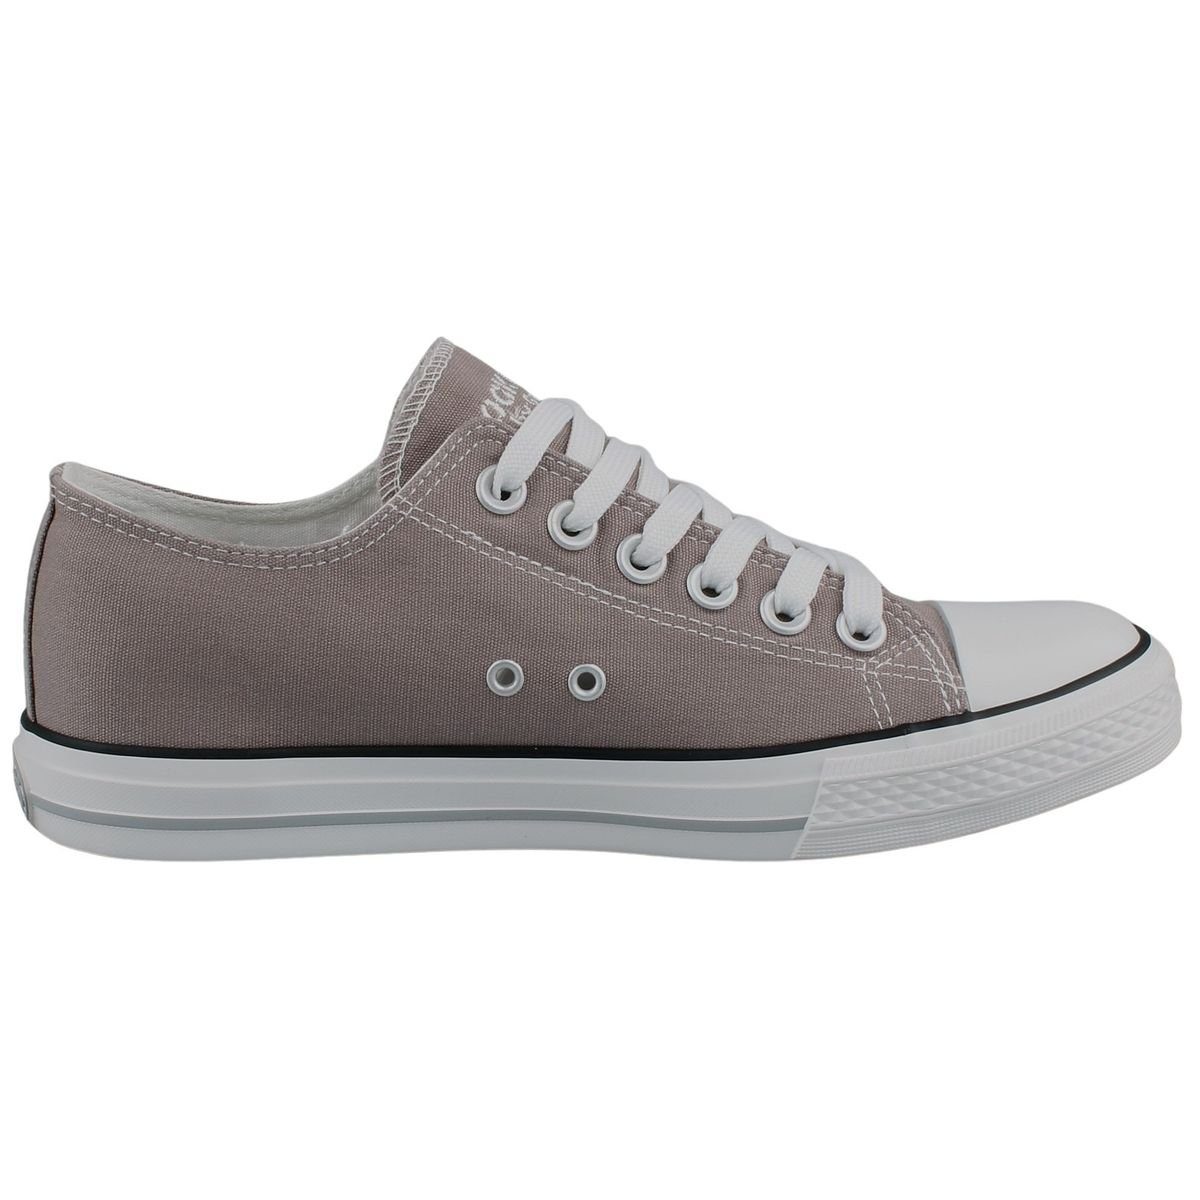 36UR201-710210 grey 210 Gerli Dockers by Sneaker light